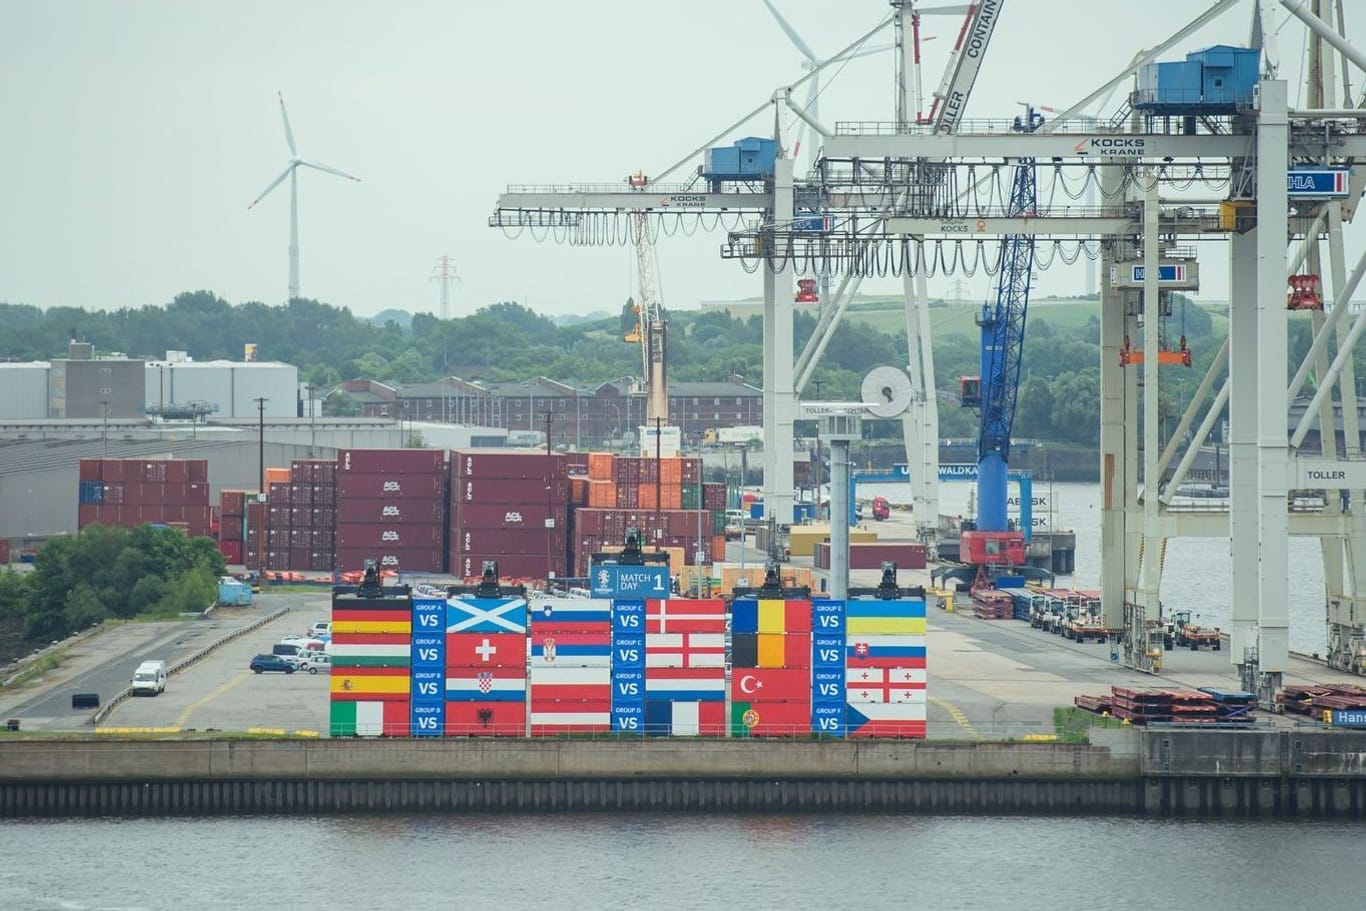 Mit Flaggen von EM-Ländern bemalte Schiffscontainer im Hamburger Hafen.